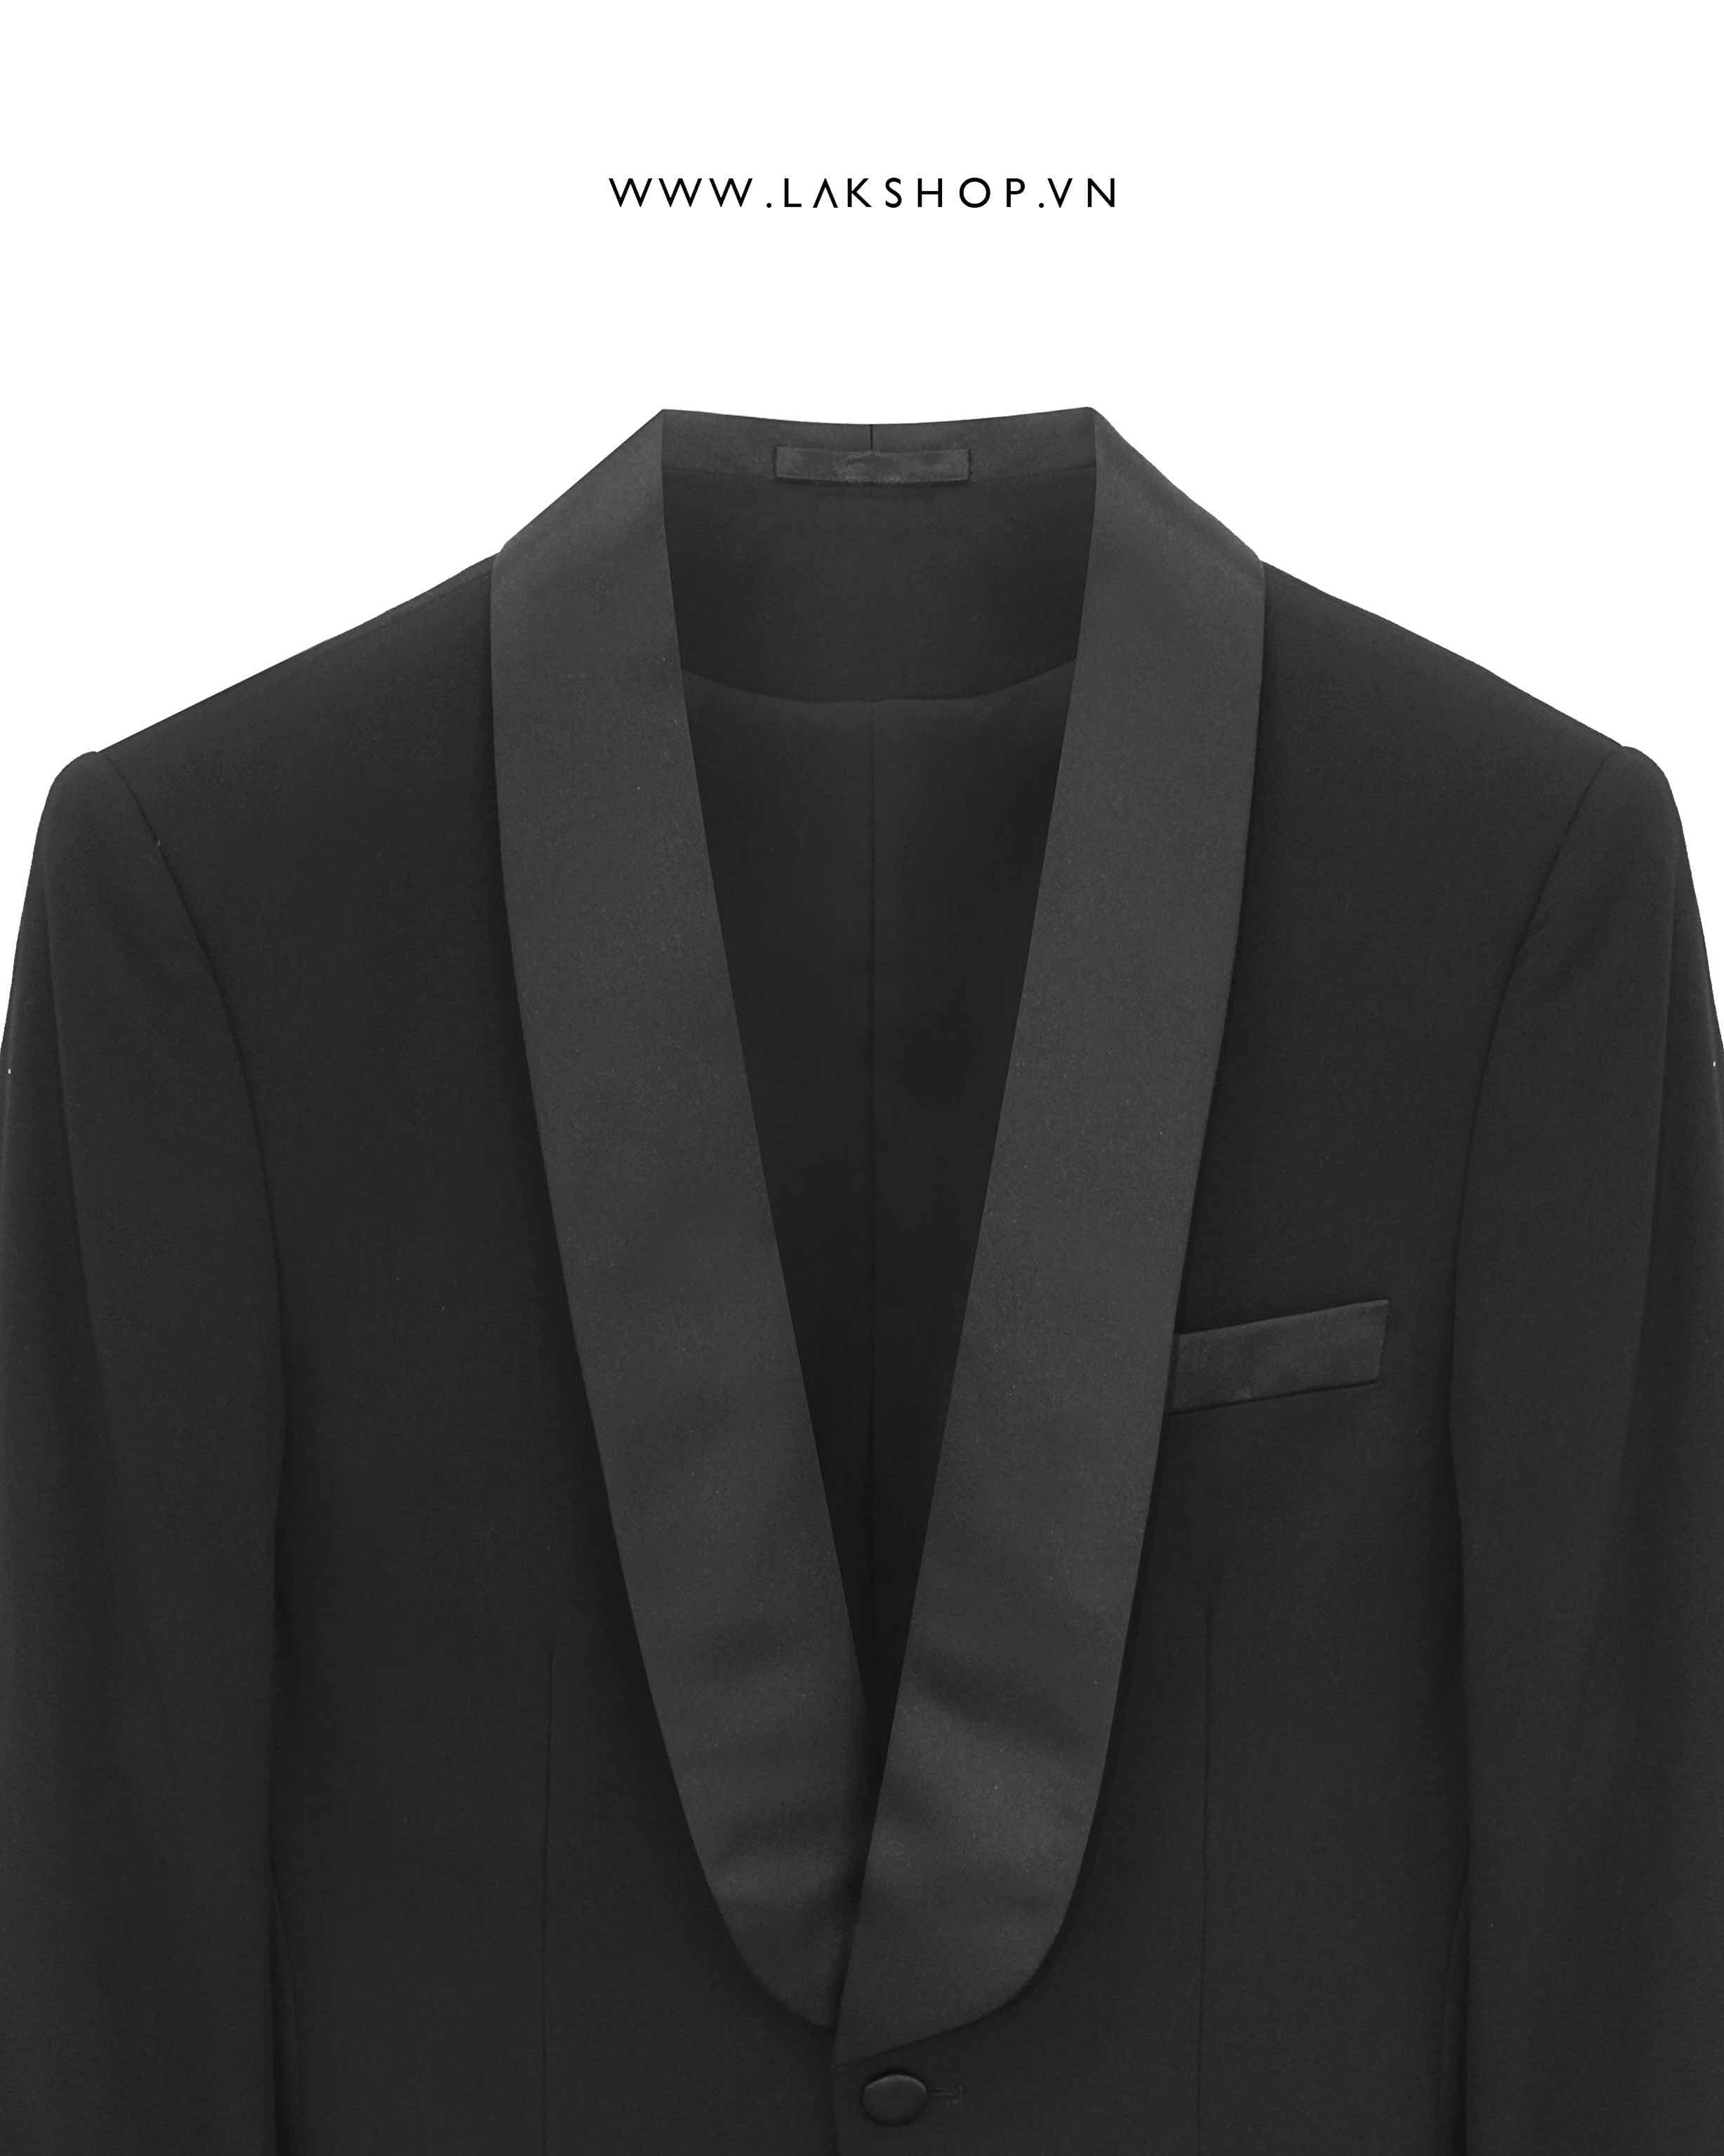 Áo 2 Black Tuxedo Shawl Collar Blazer cs2